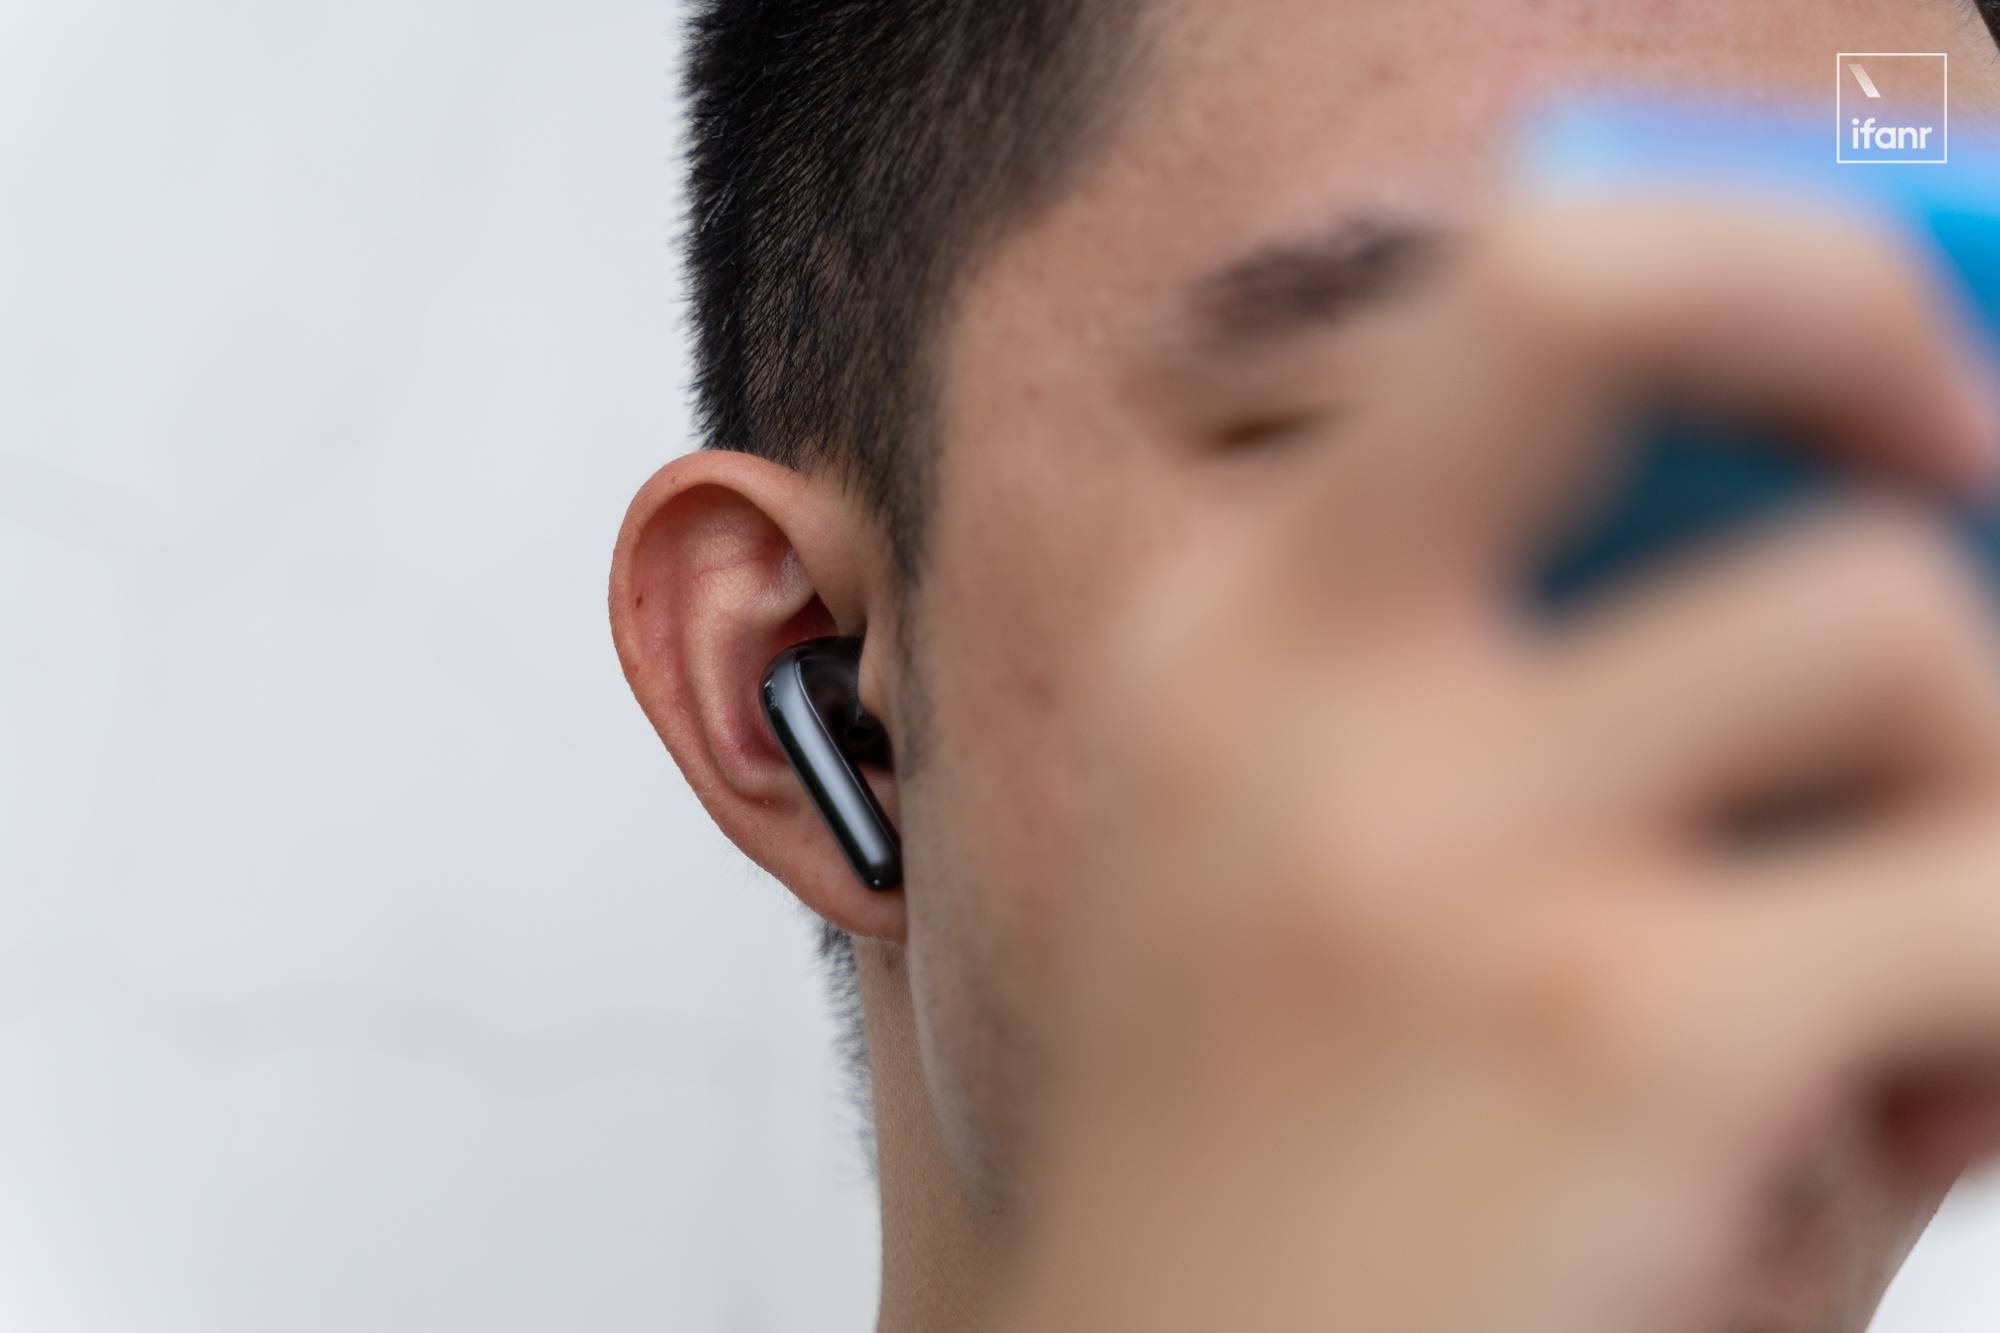 DSC06891 - Xiaomi Noise Cancelling Headphones Pro prima esperienza: entro mille yuan, eccezionale riduzione del rumore, buona qualità del suono